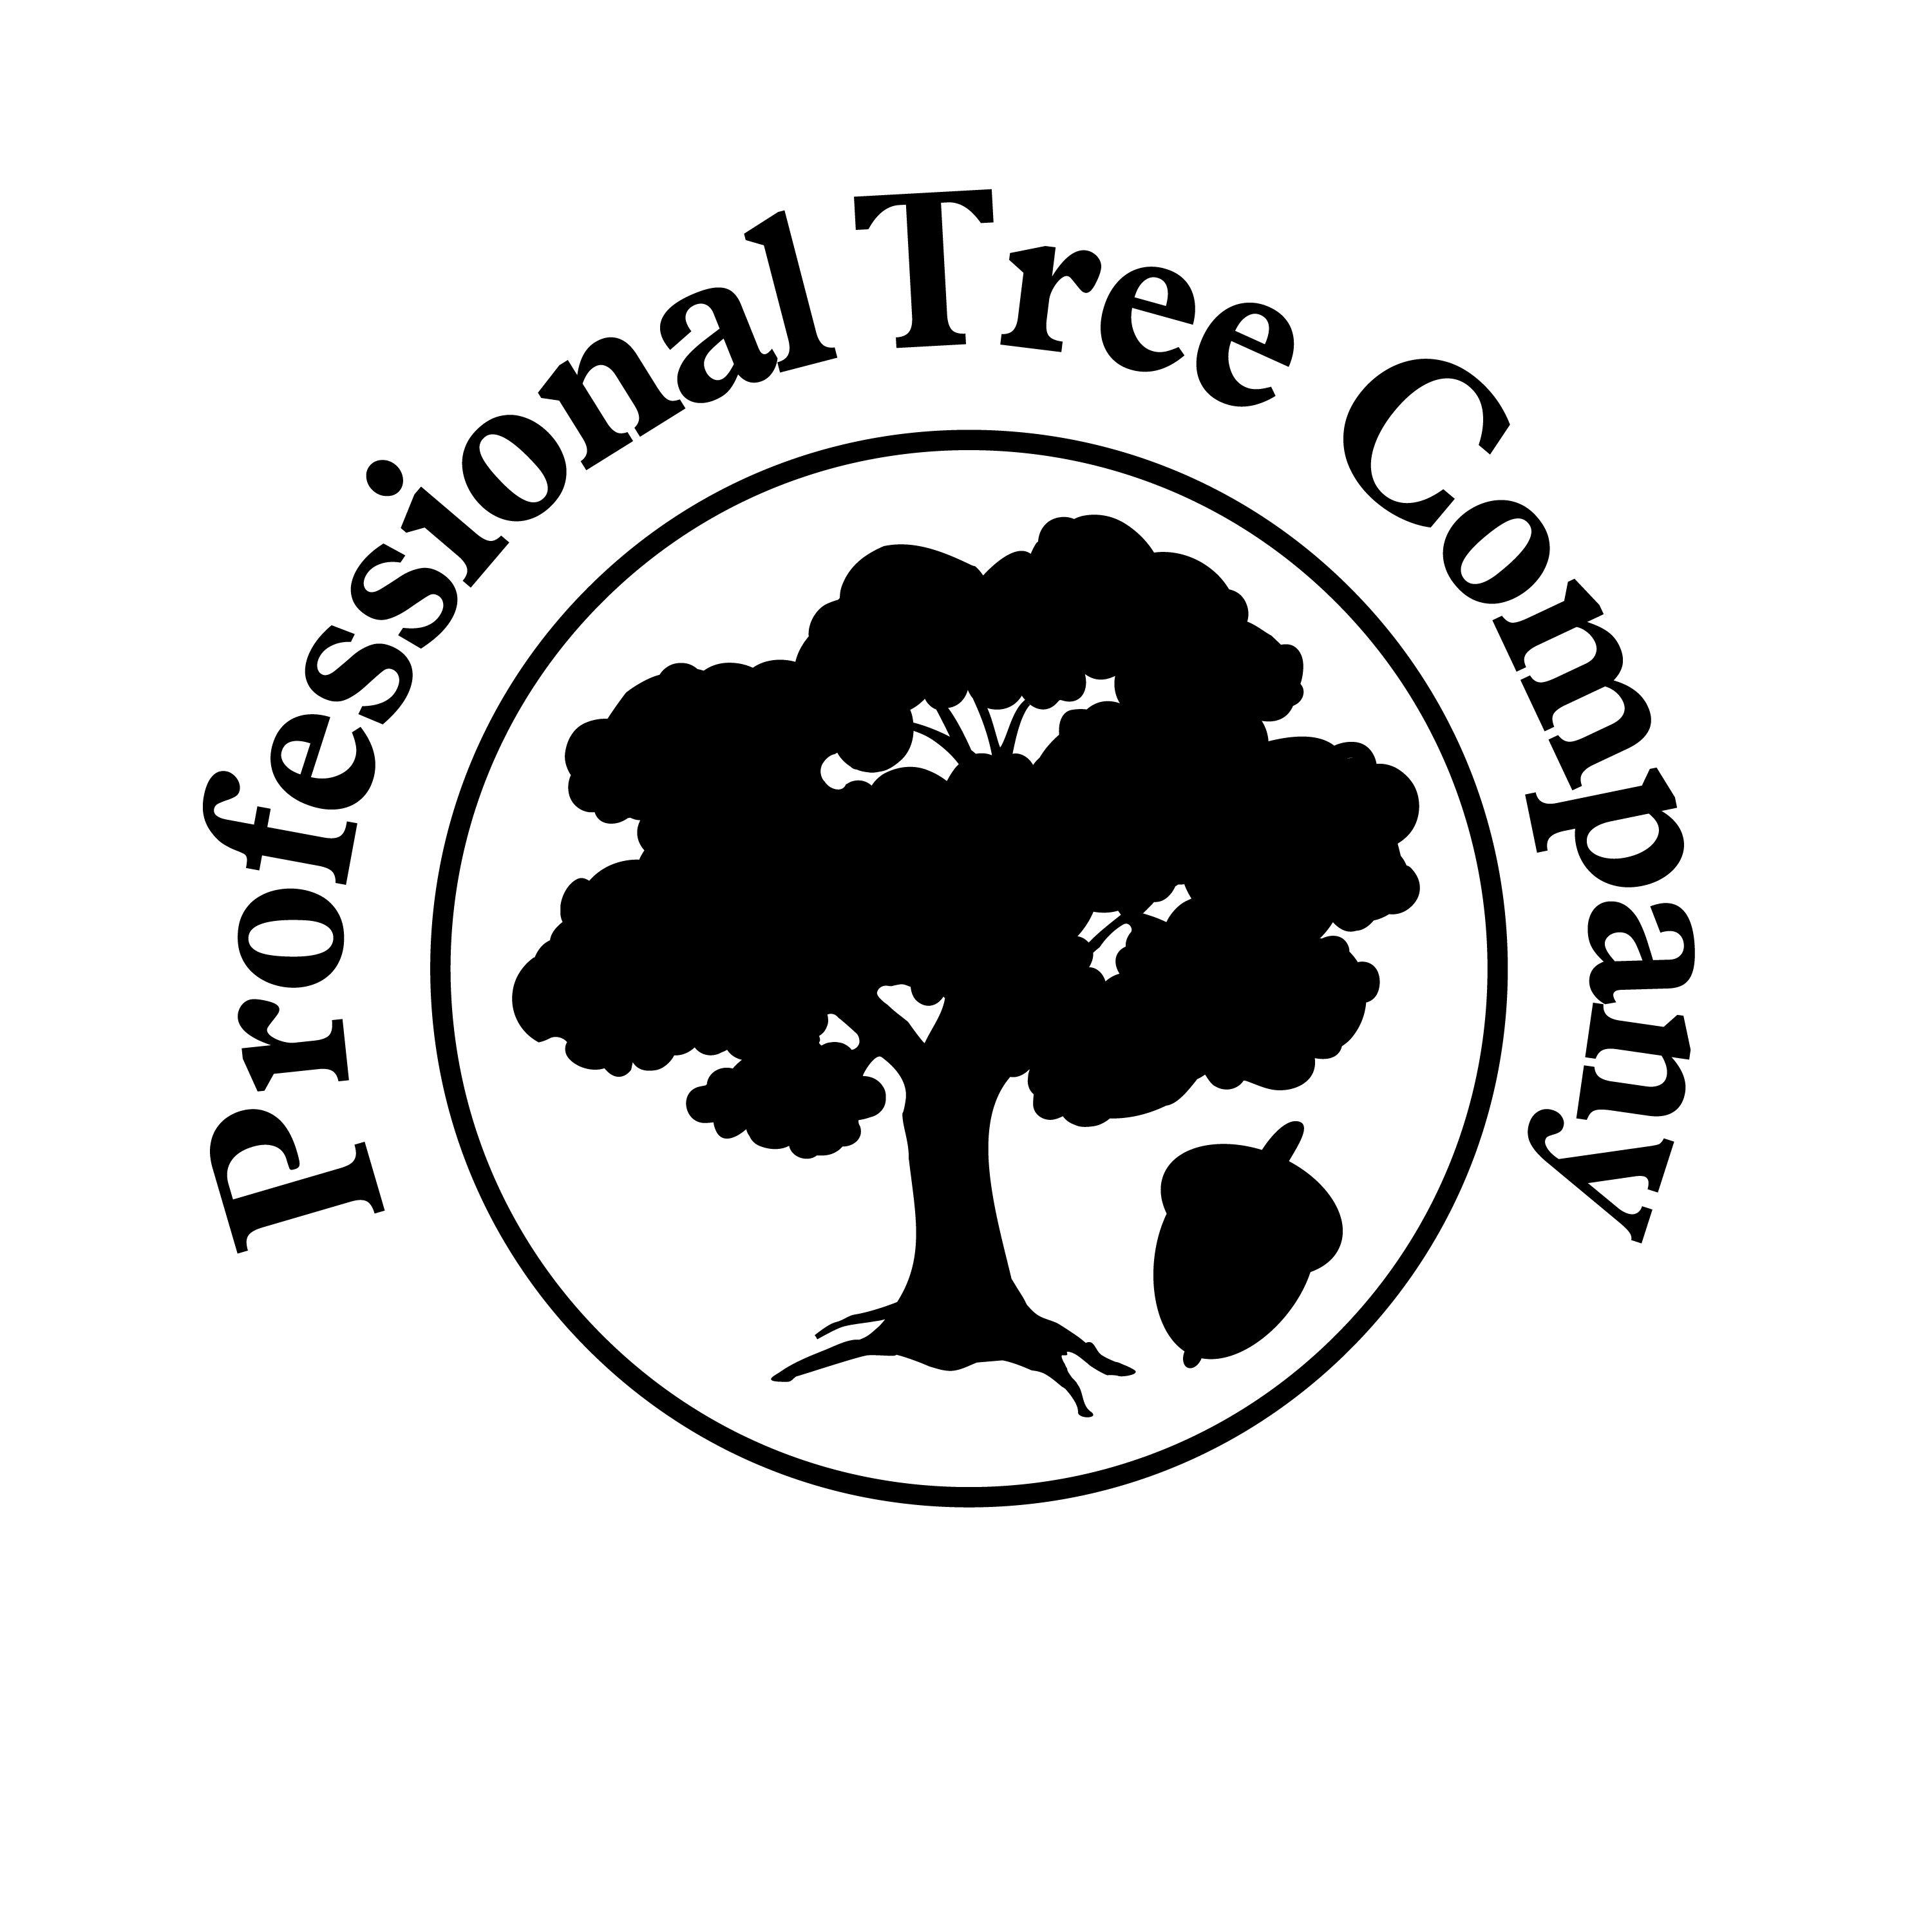 Black and White Tree in Circle Logo - Tree in circle Logos